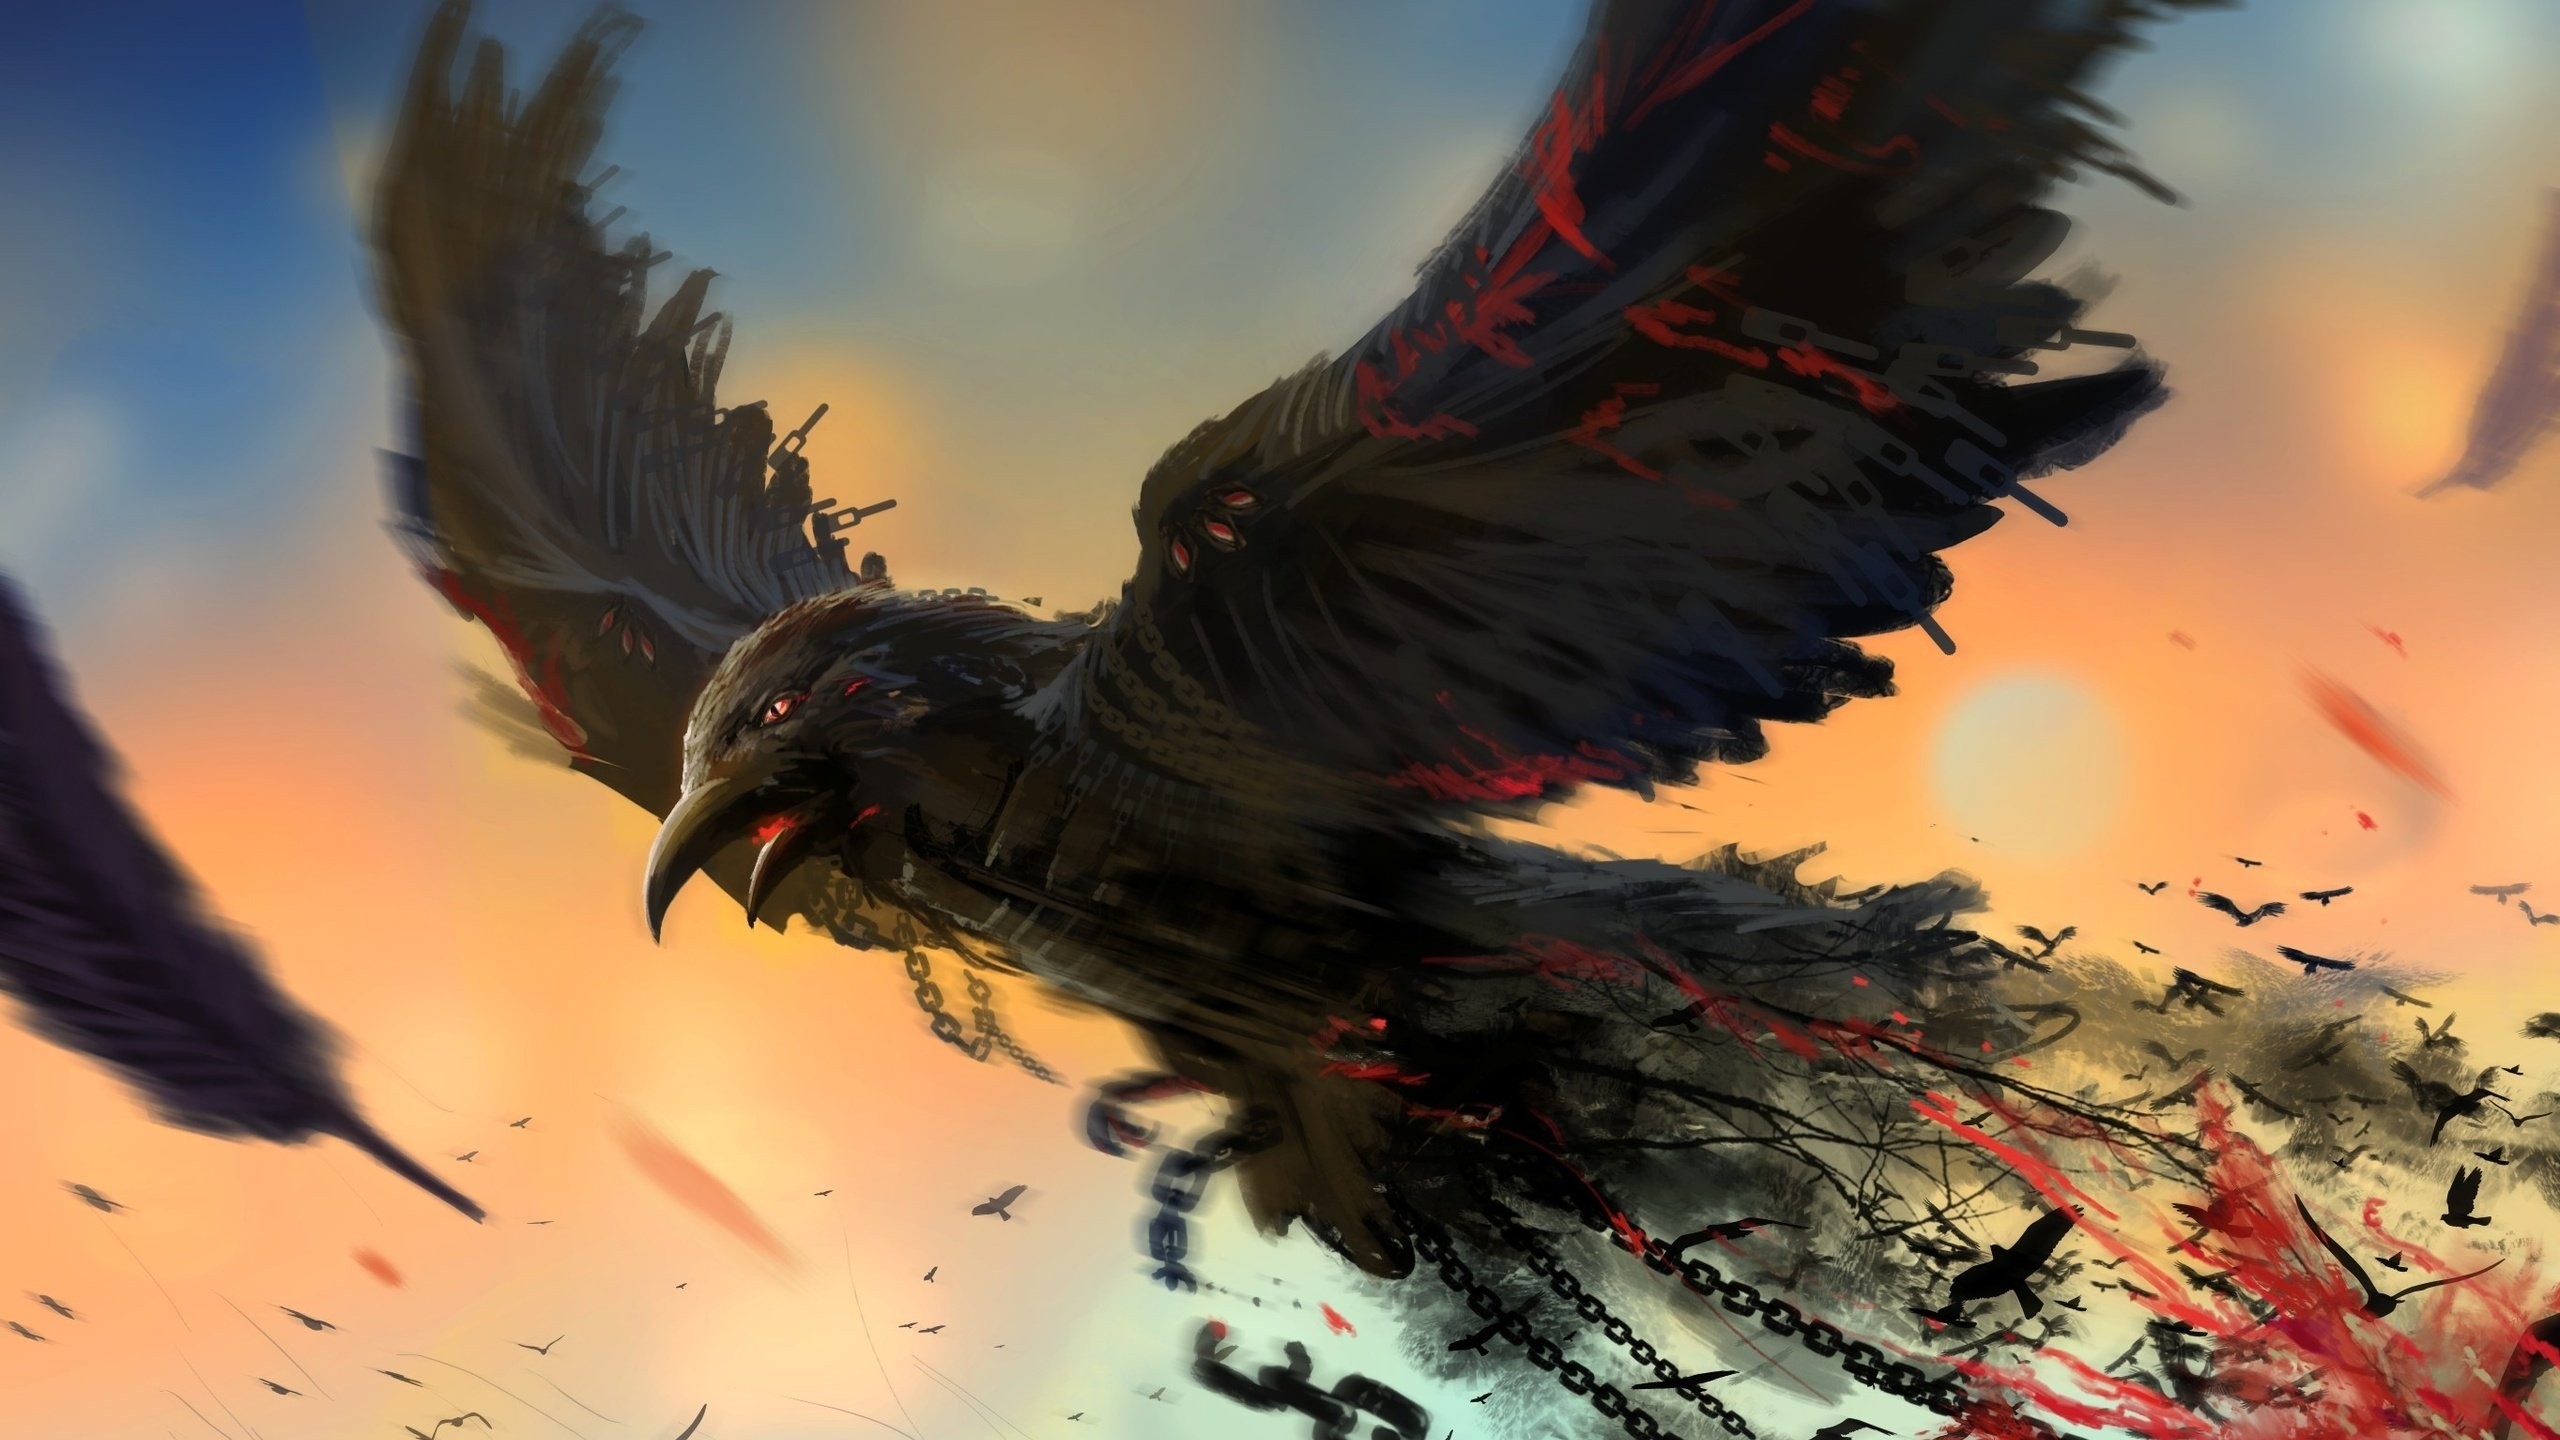 General 2560x1440 birds chains artwork crow blood digital art fantasy art animals DeviantArt